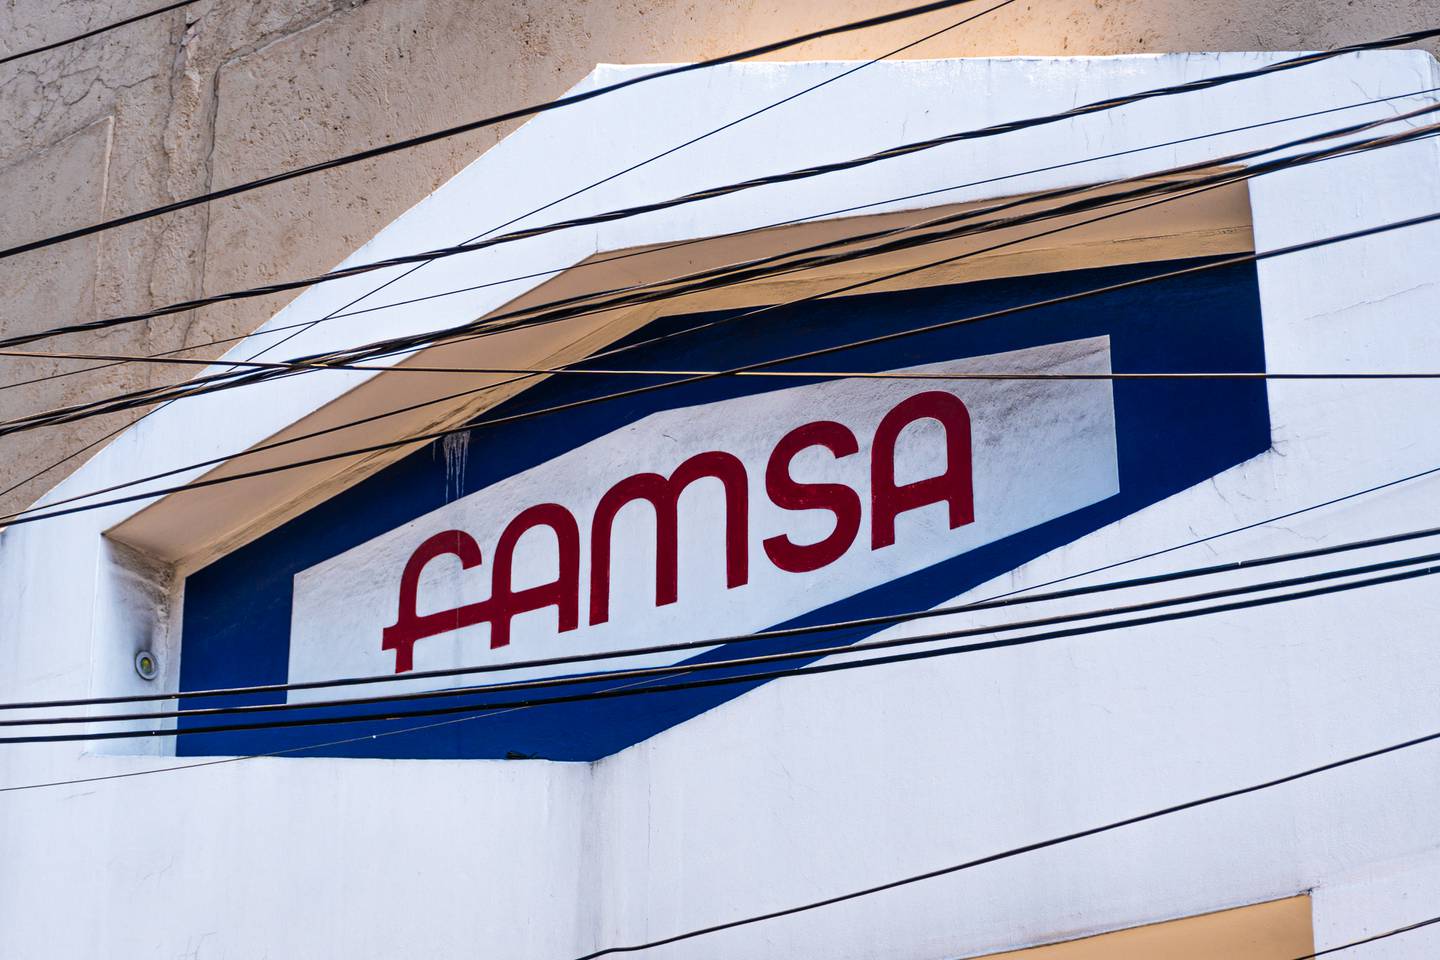 Famsa, que pasó por un Concurso Mercantil, ha alertado desde octubre de 2022 una iliquidez para continuar sus operaciones.